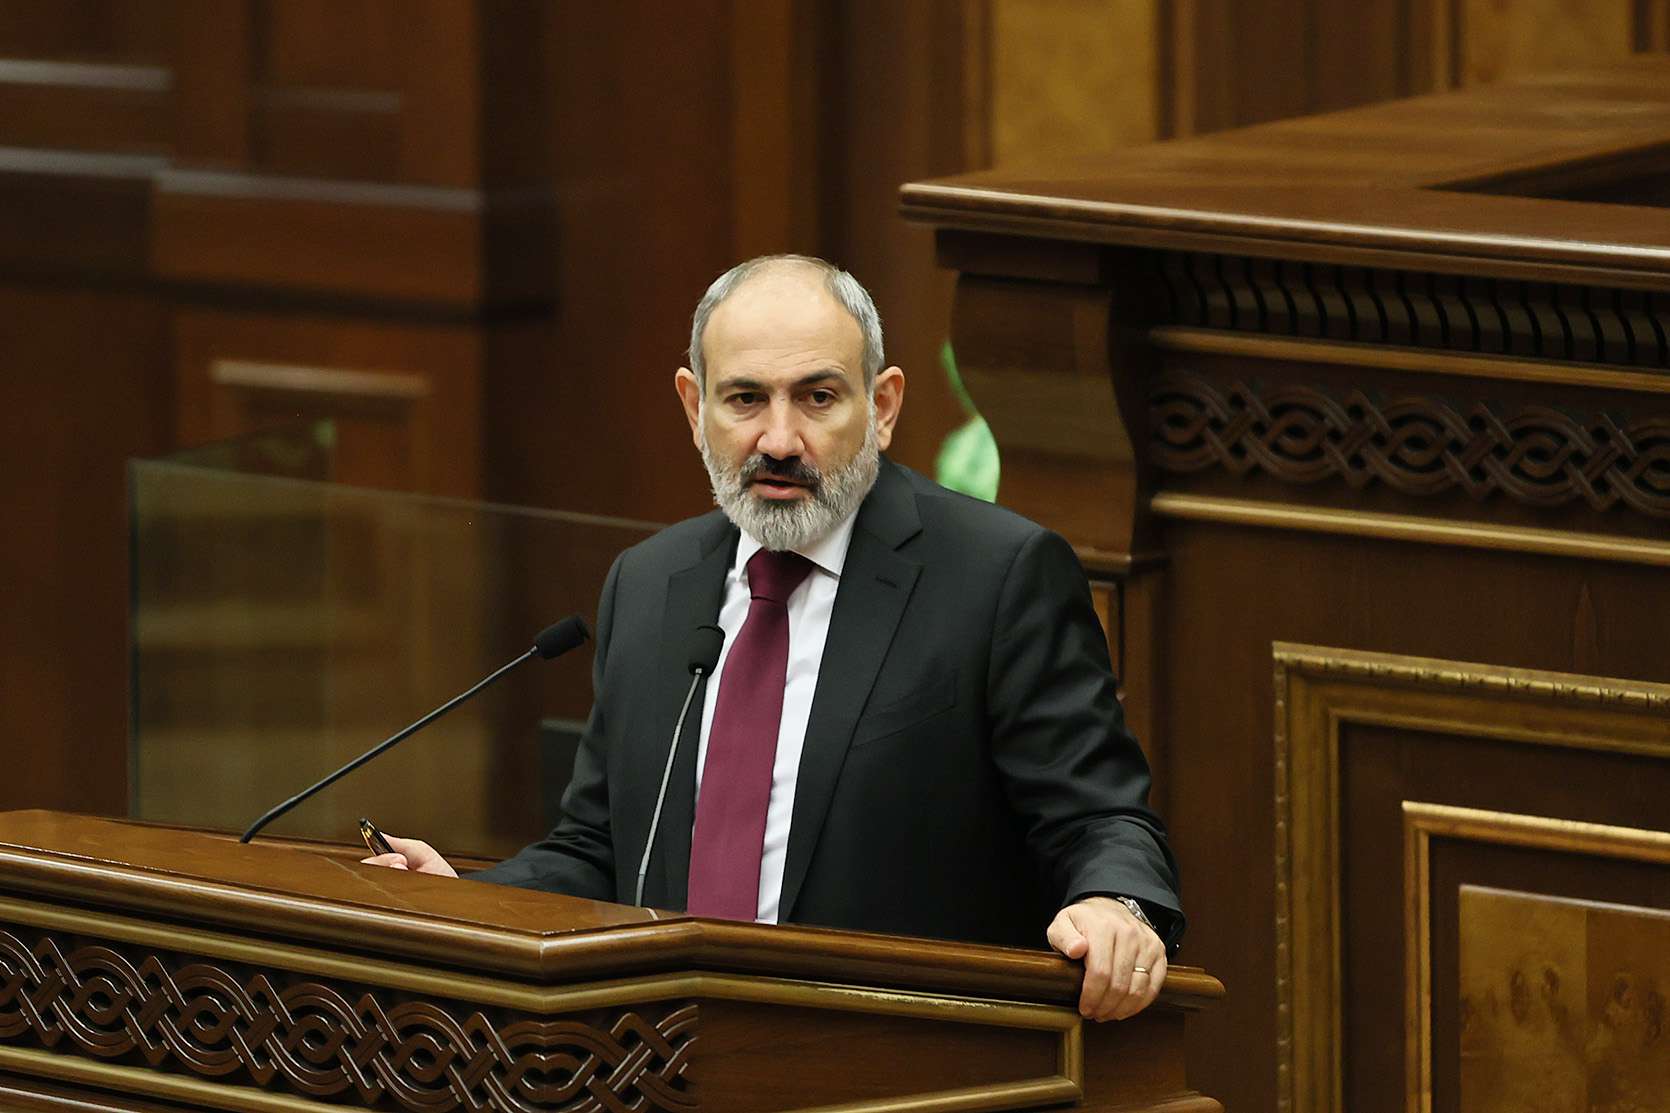 Երկրորդ դեպքն է, երբ Ադրբեջանը հրաժարվում է կատարել հայ գերիներին ազատ արձակելու իր խոստումը. ՀՀ վարչապետ